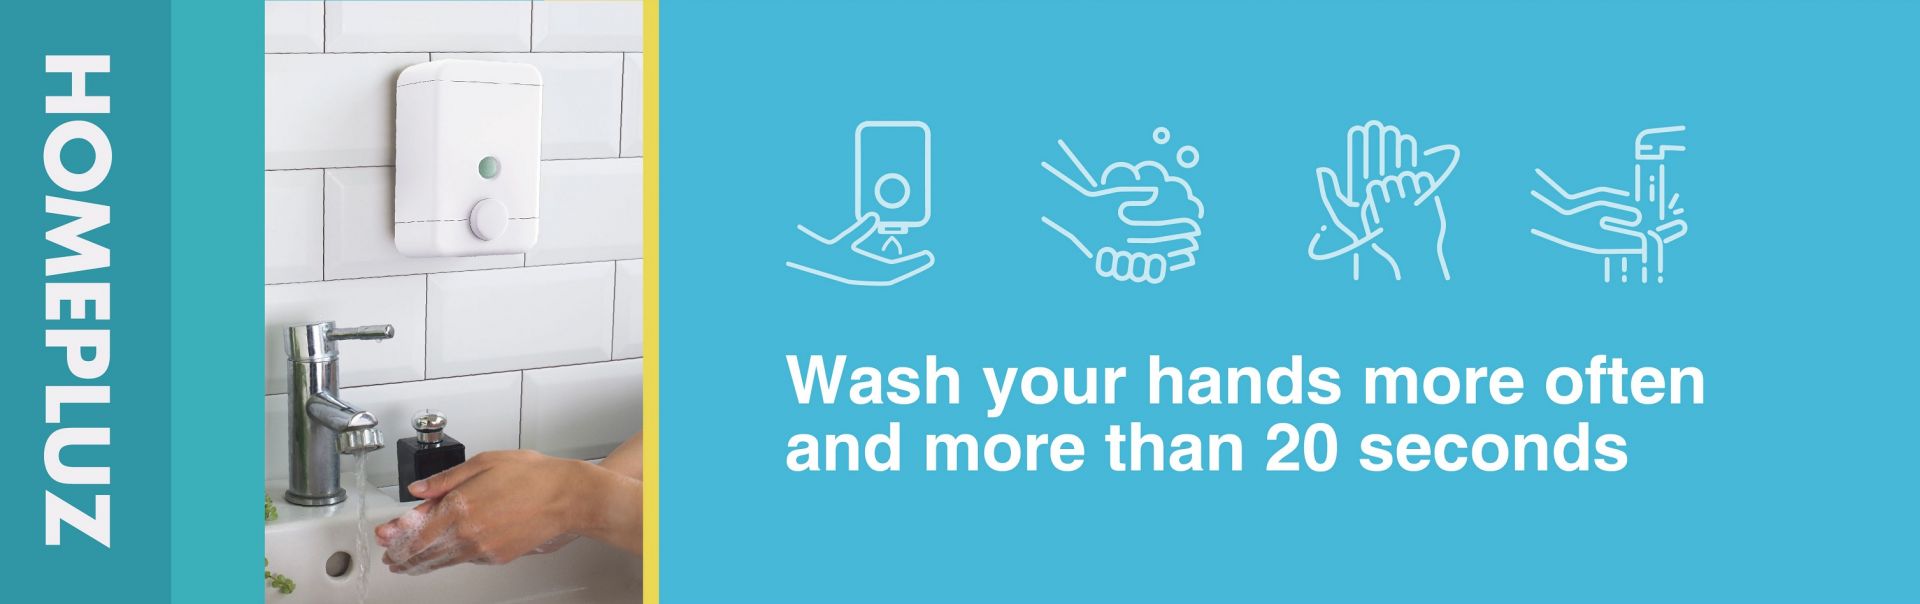 การล้างมือเพื่อป้องกันไวรัส